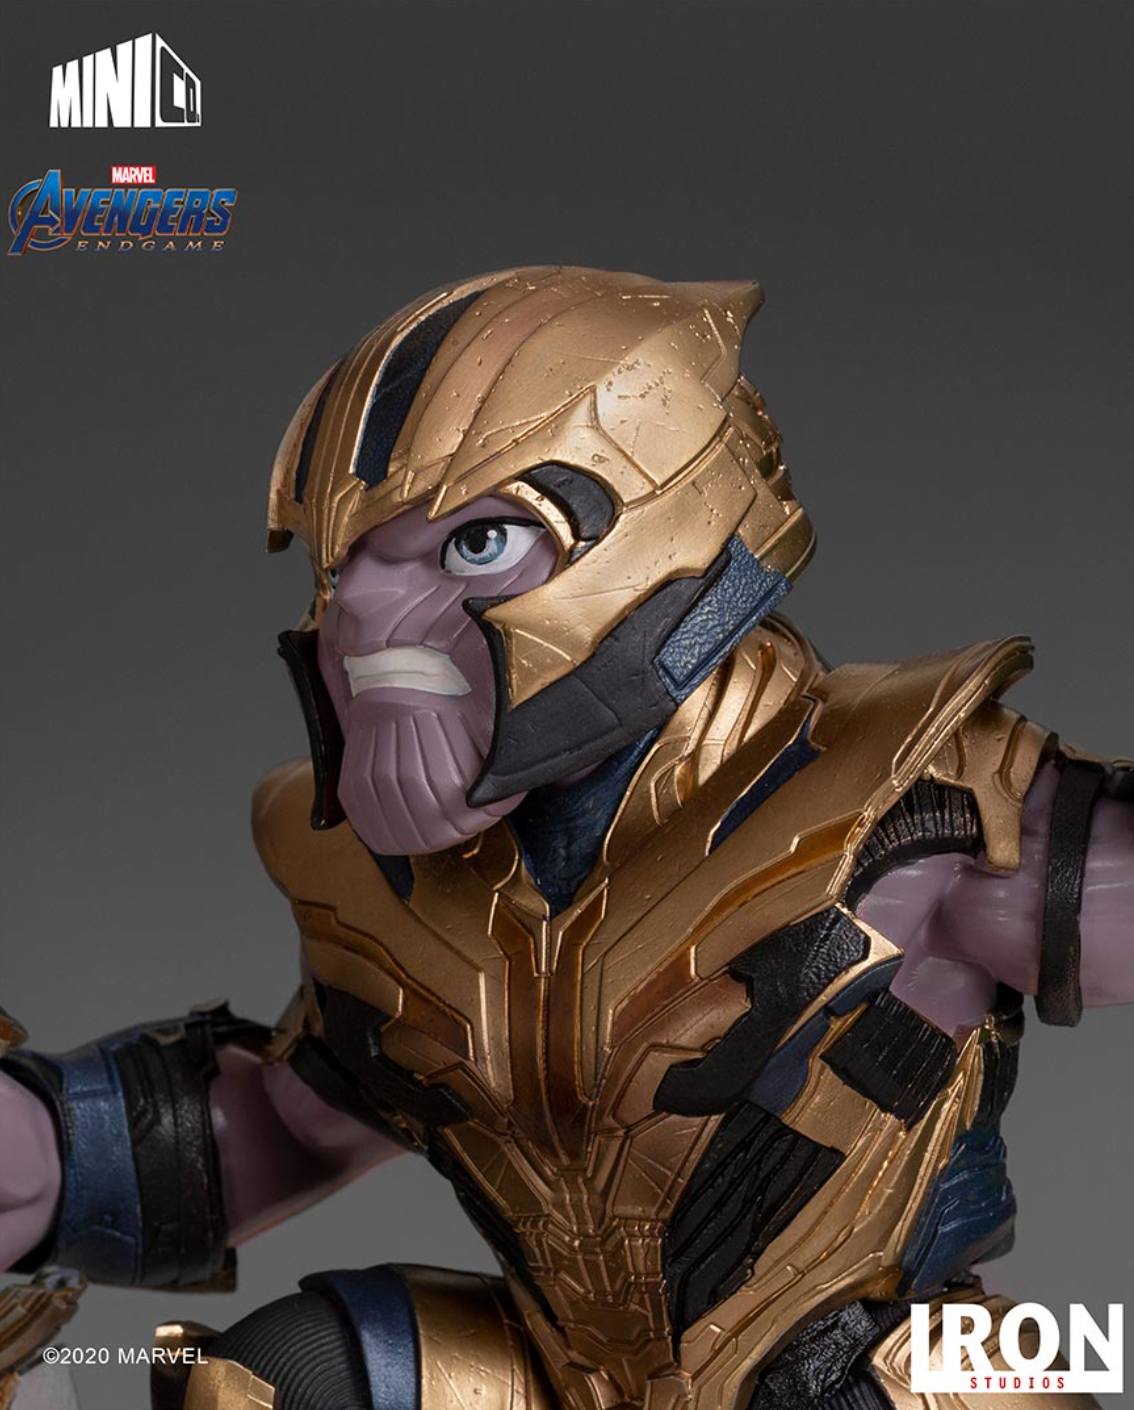 Iron Studios: Minico Avengers Endgame - Thanos